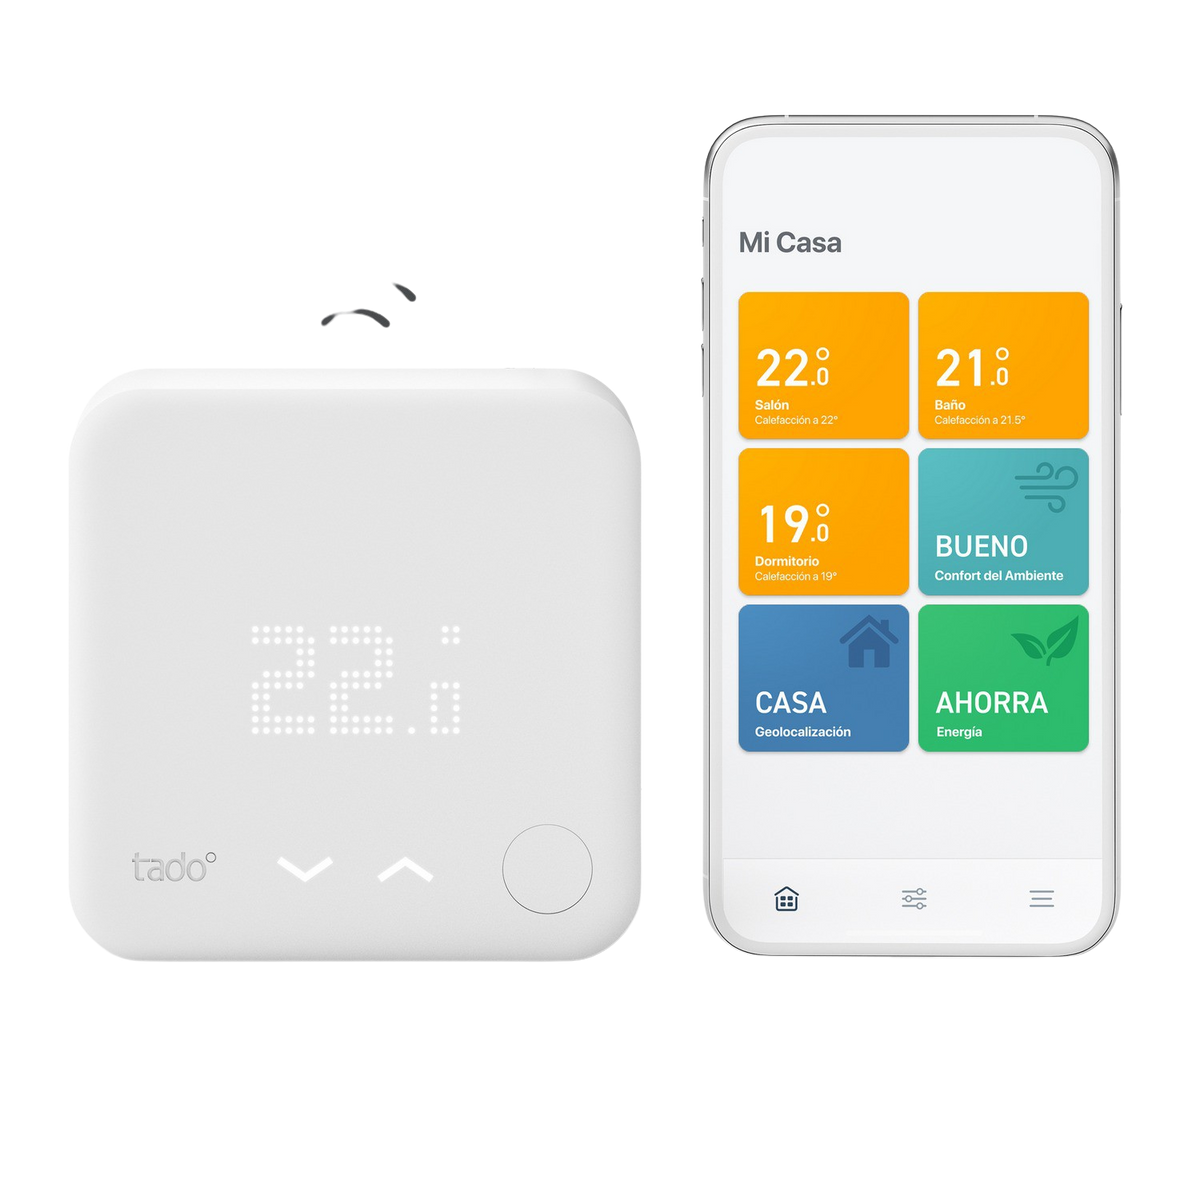 TADO Starter Kit, Wireless V3+ Thermostat Smartes Starter weiß Kit